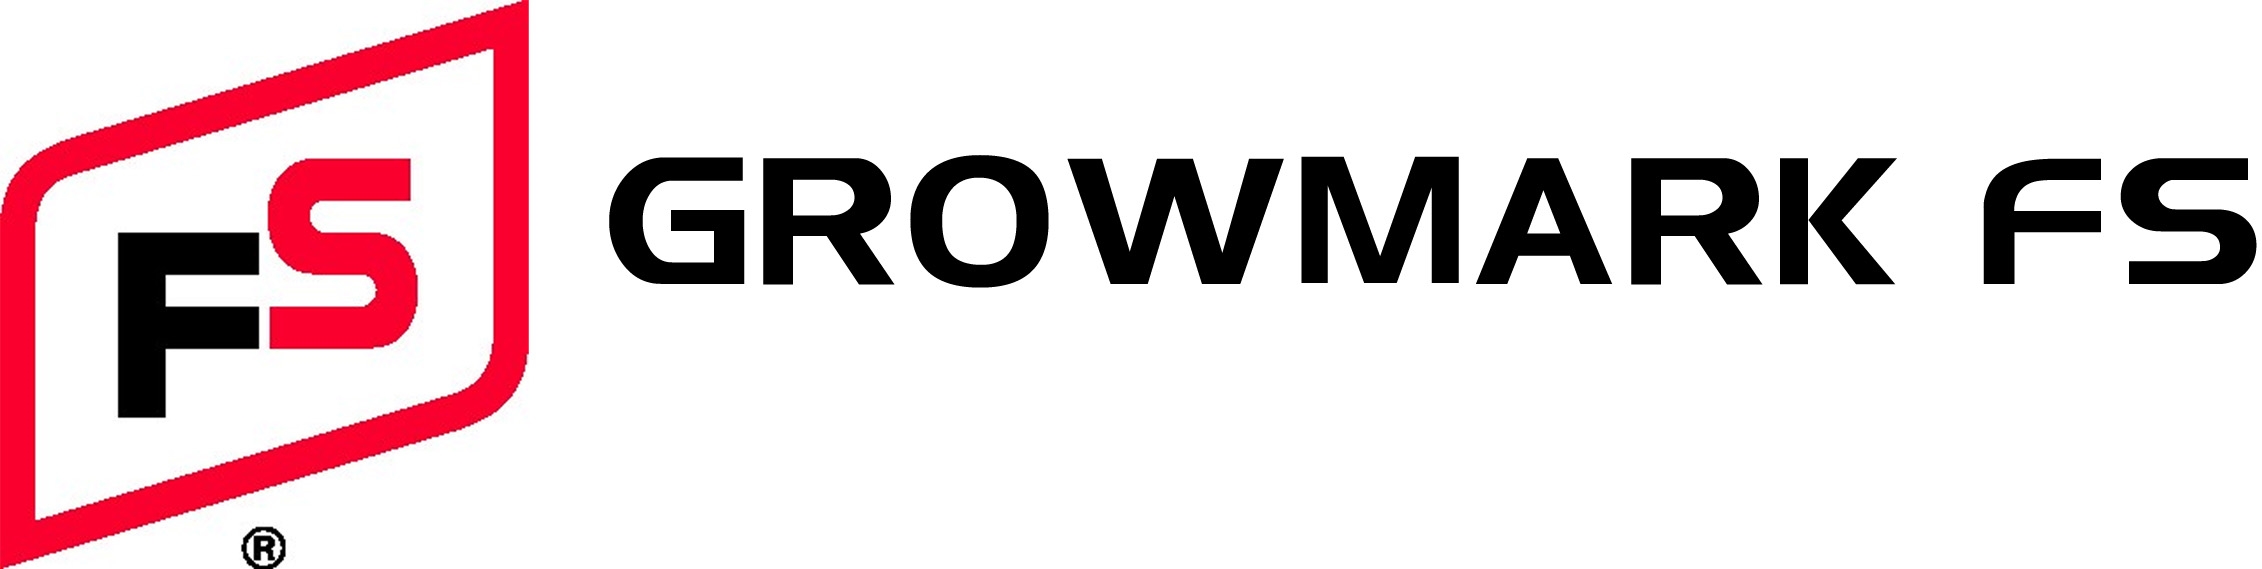 GROWMARK FS, LLC logo